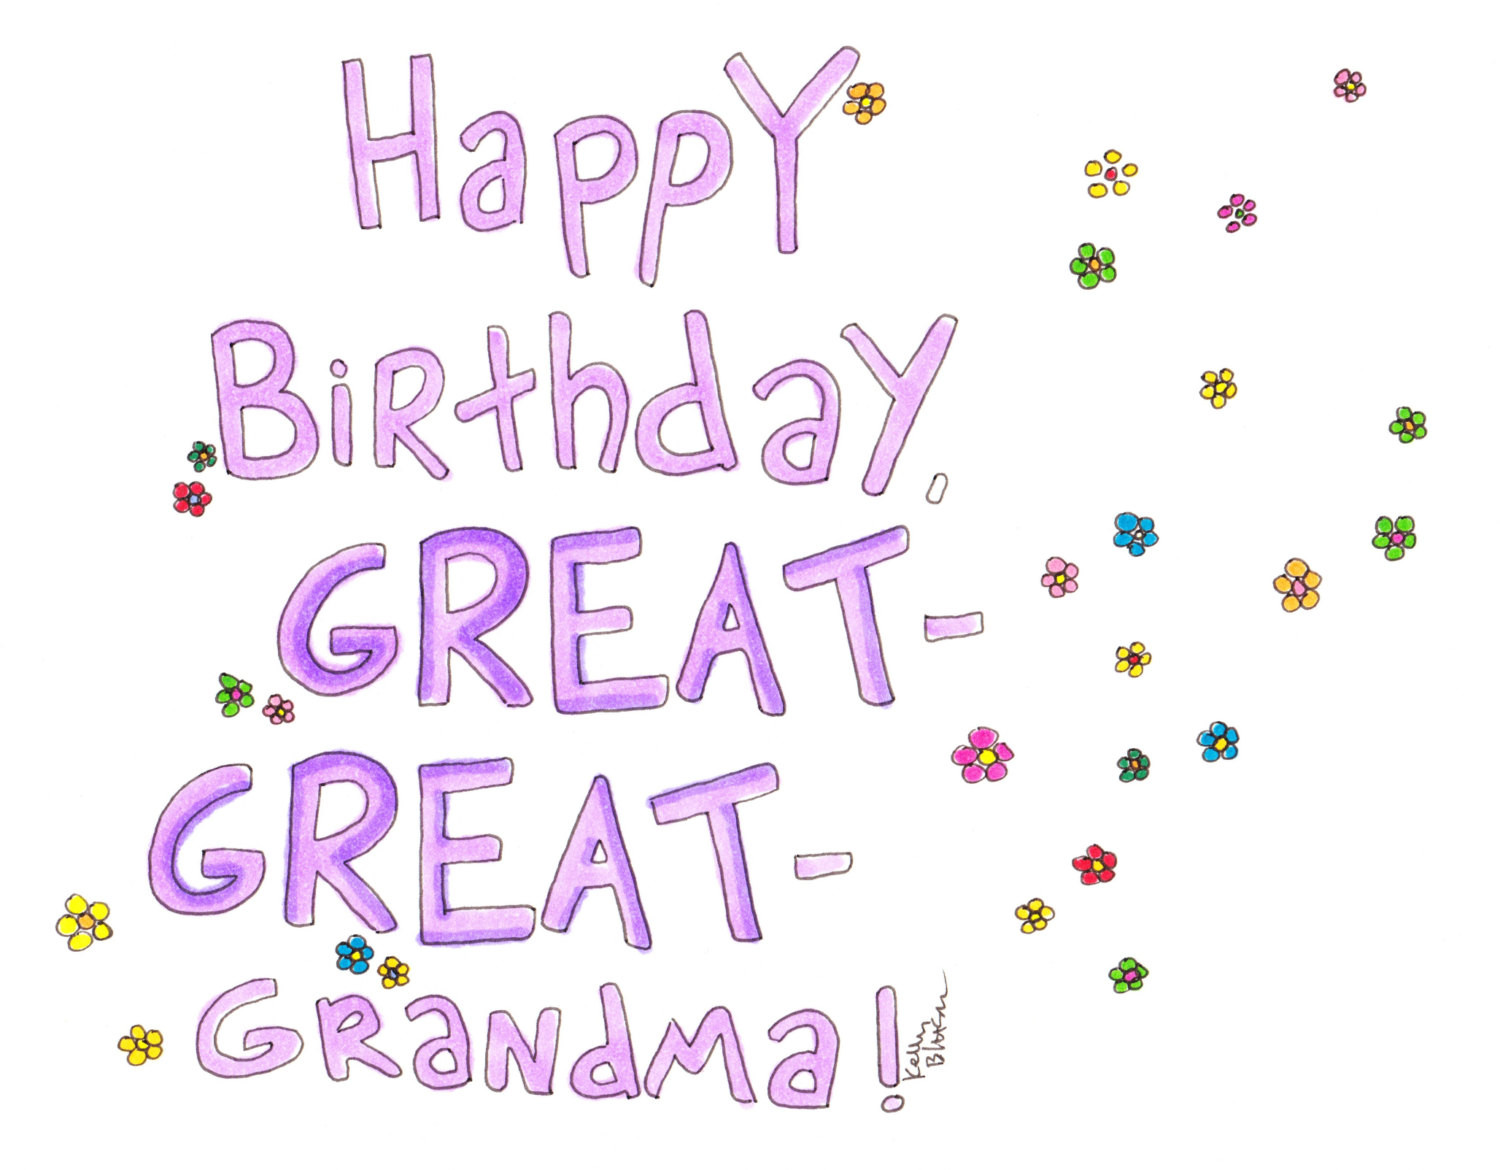 Happy Birthday Grandma Cards
 Happy birthday great great grandma card birthday card